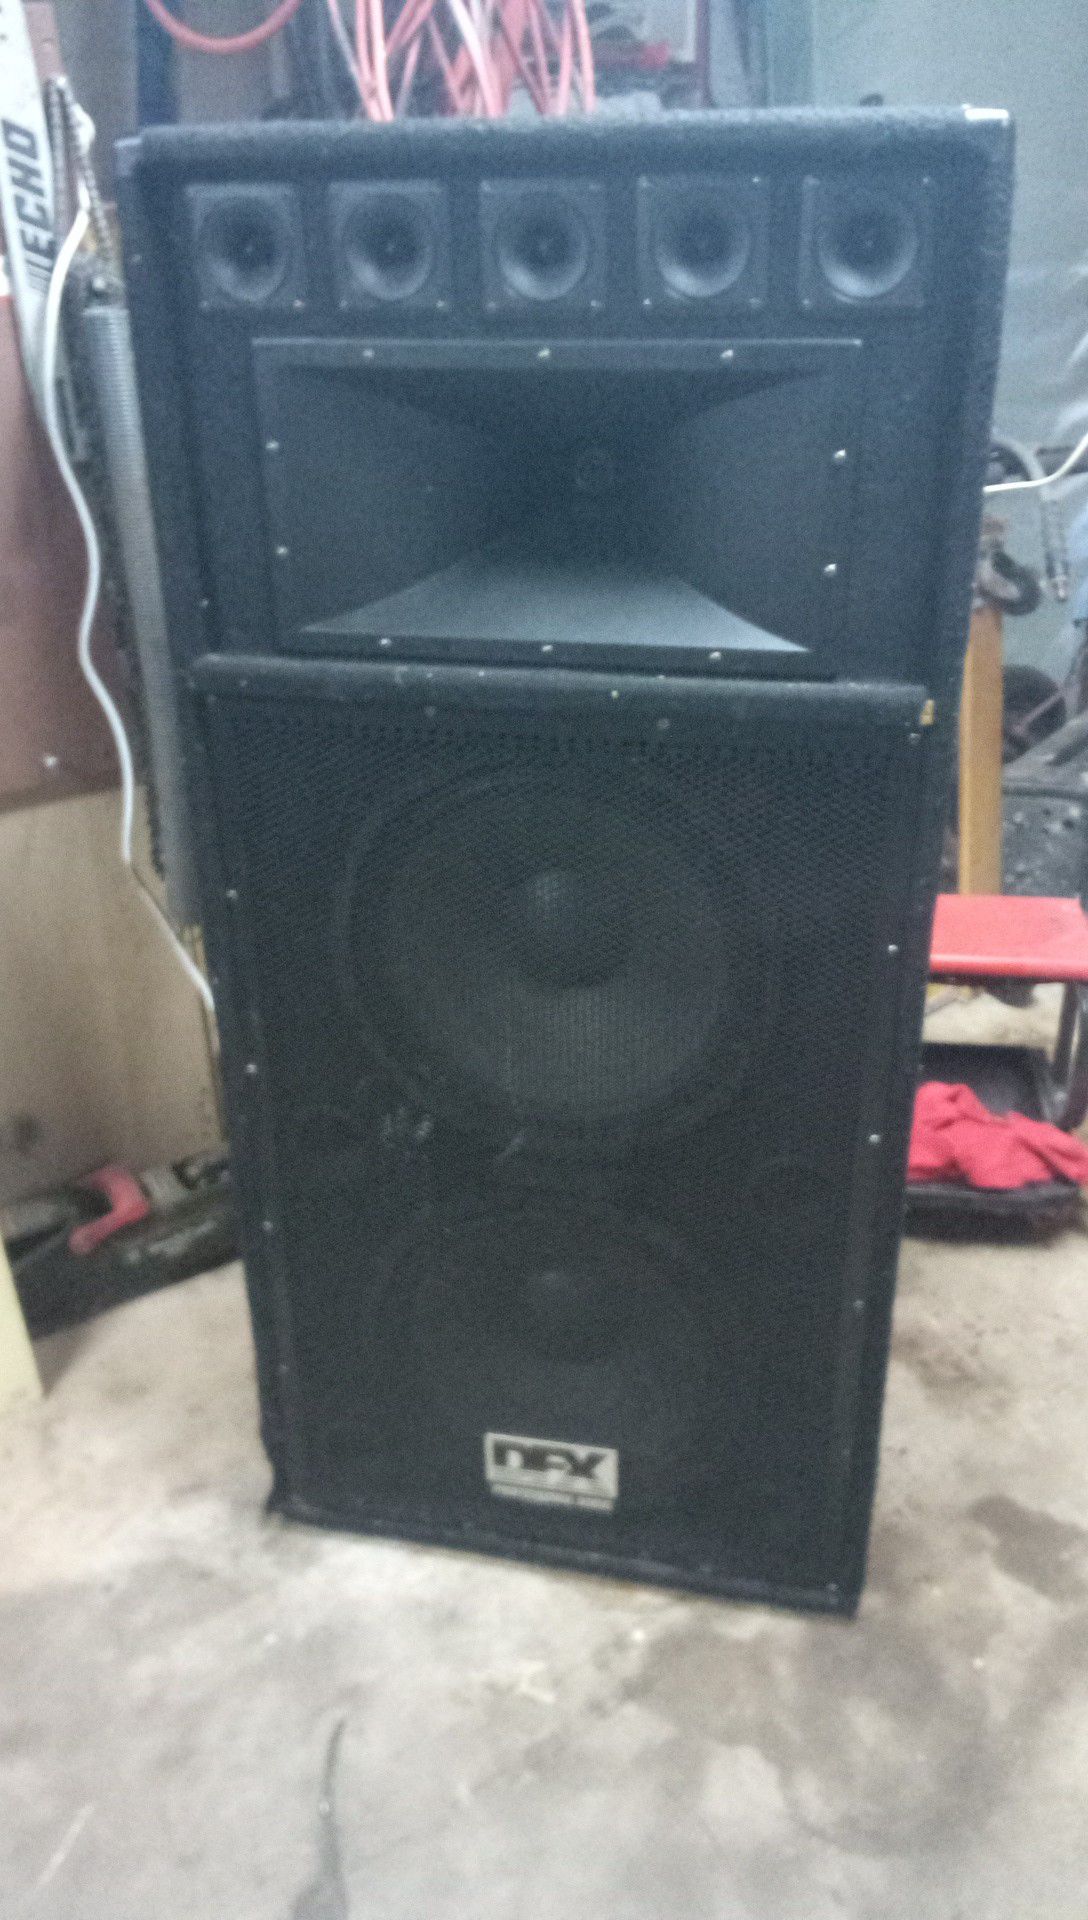 2 DFX Audio 2000 watt Speakers